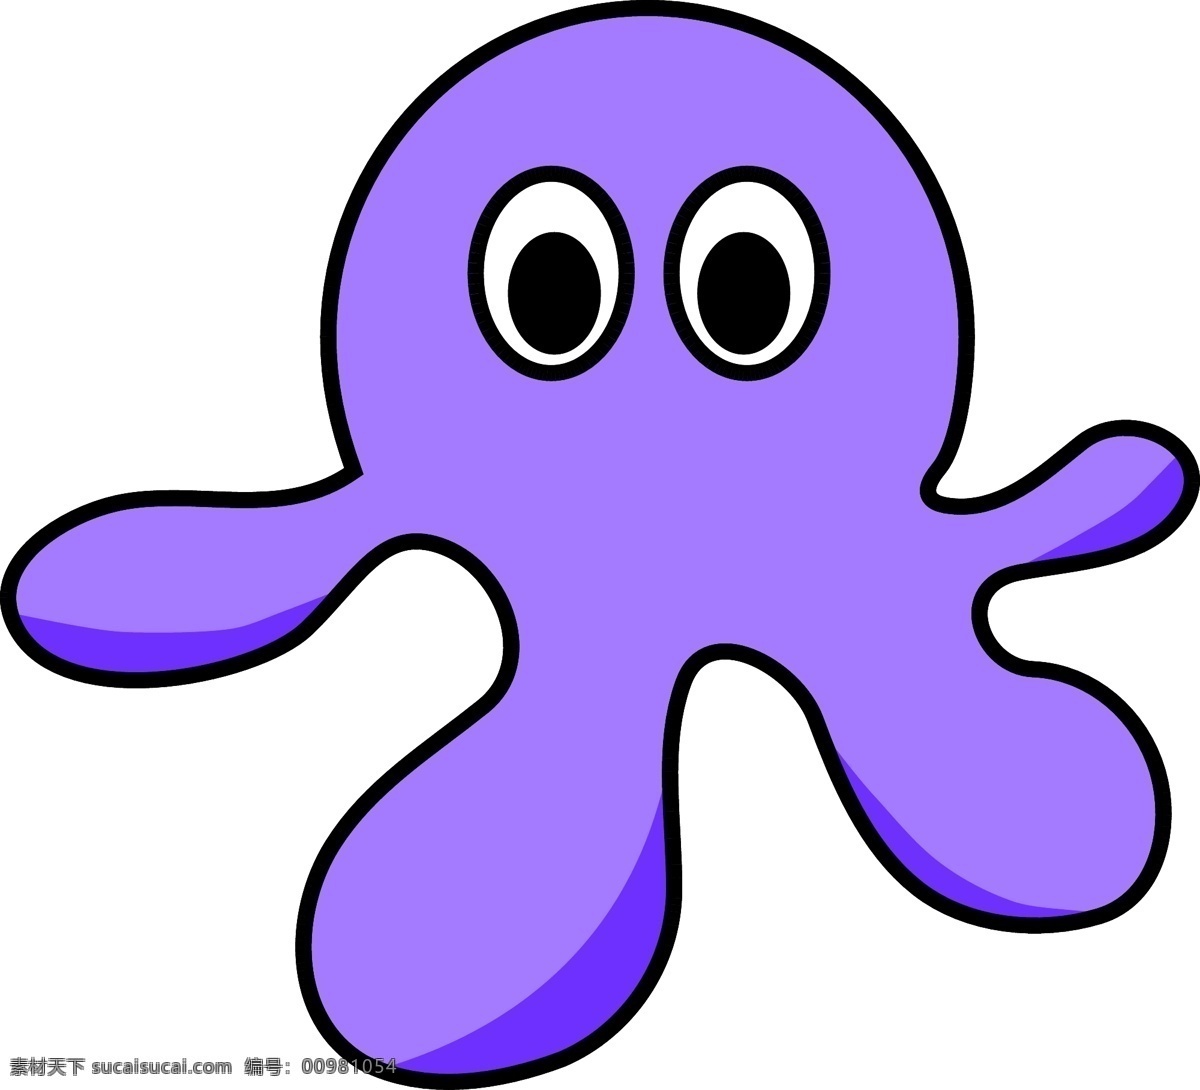 紫色 可爱 章鱼 卡通 形象 矢量图 卡通形象